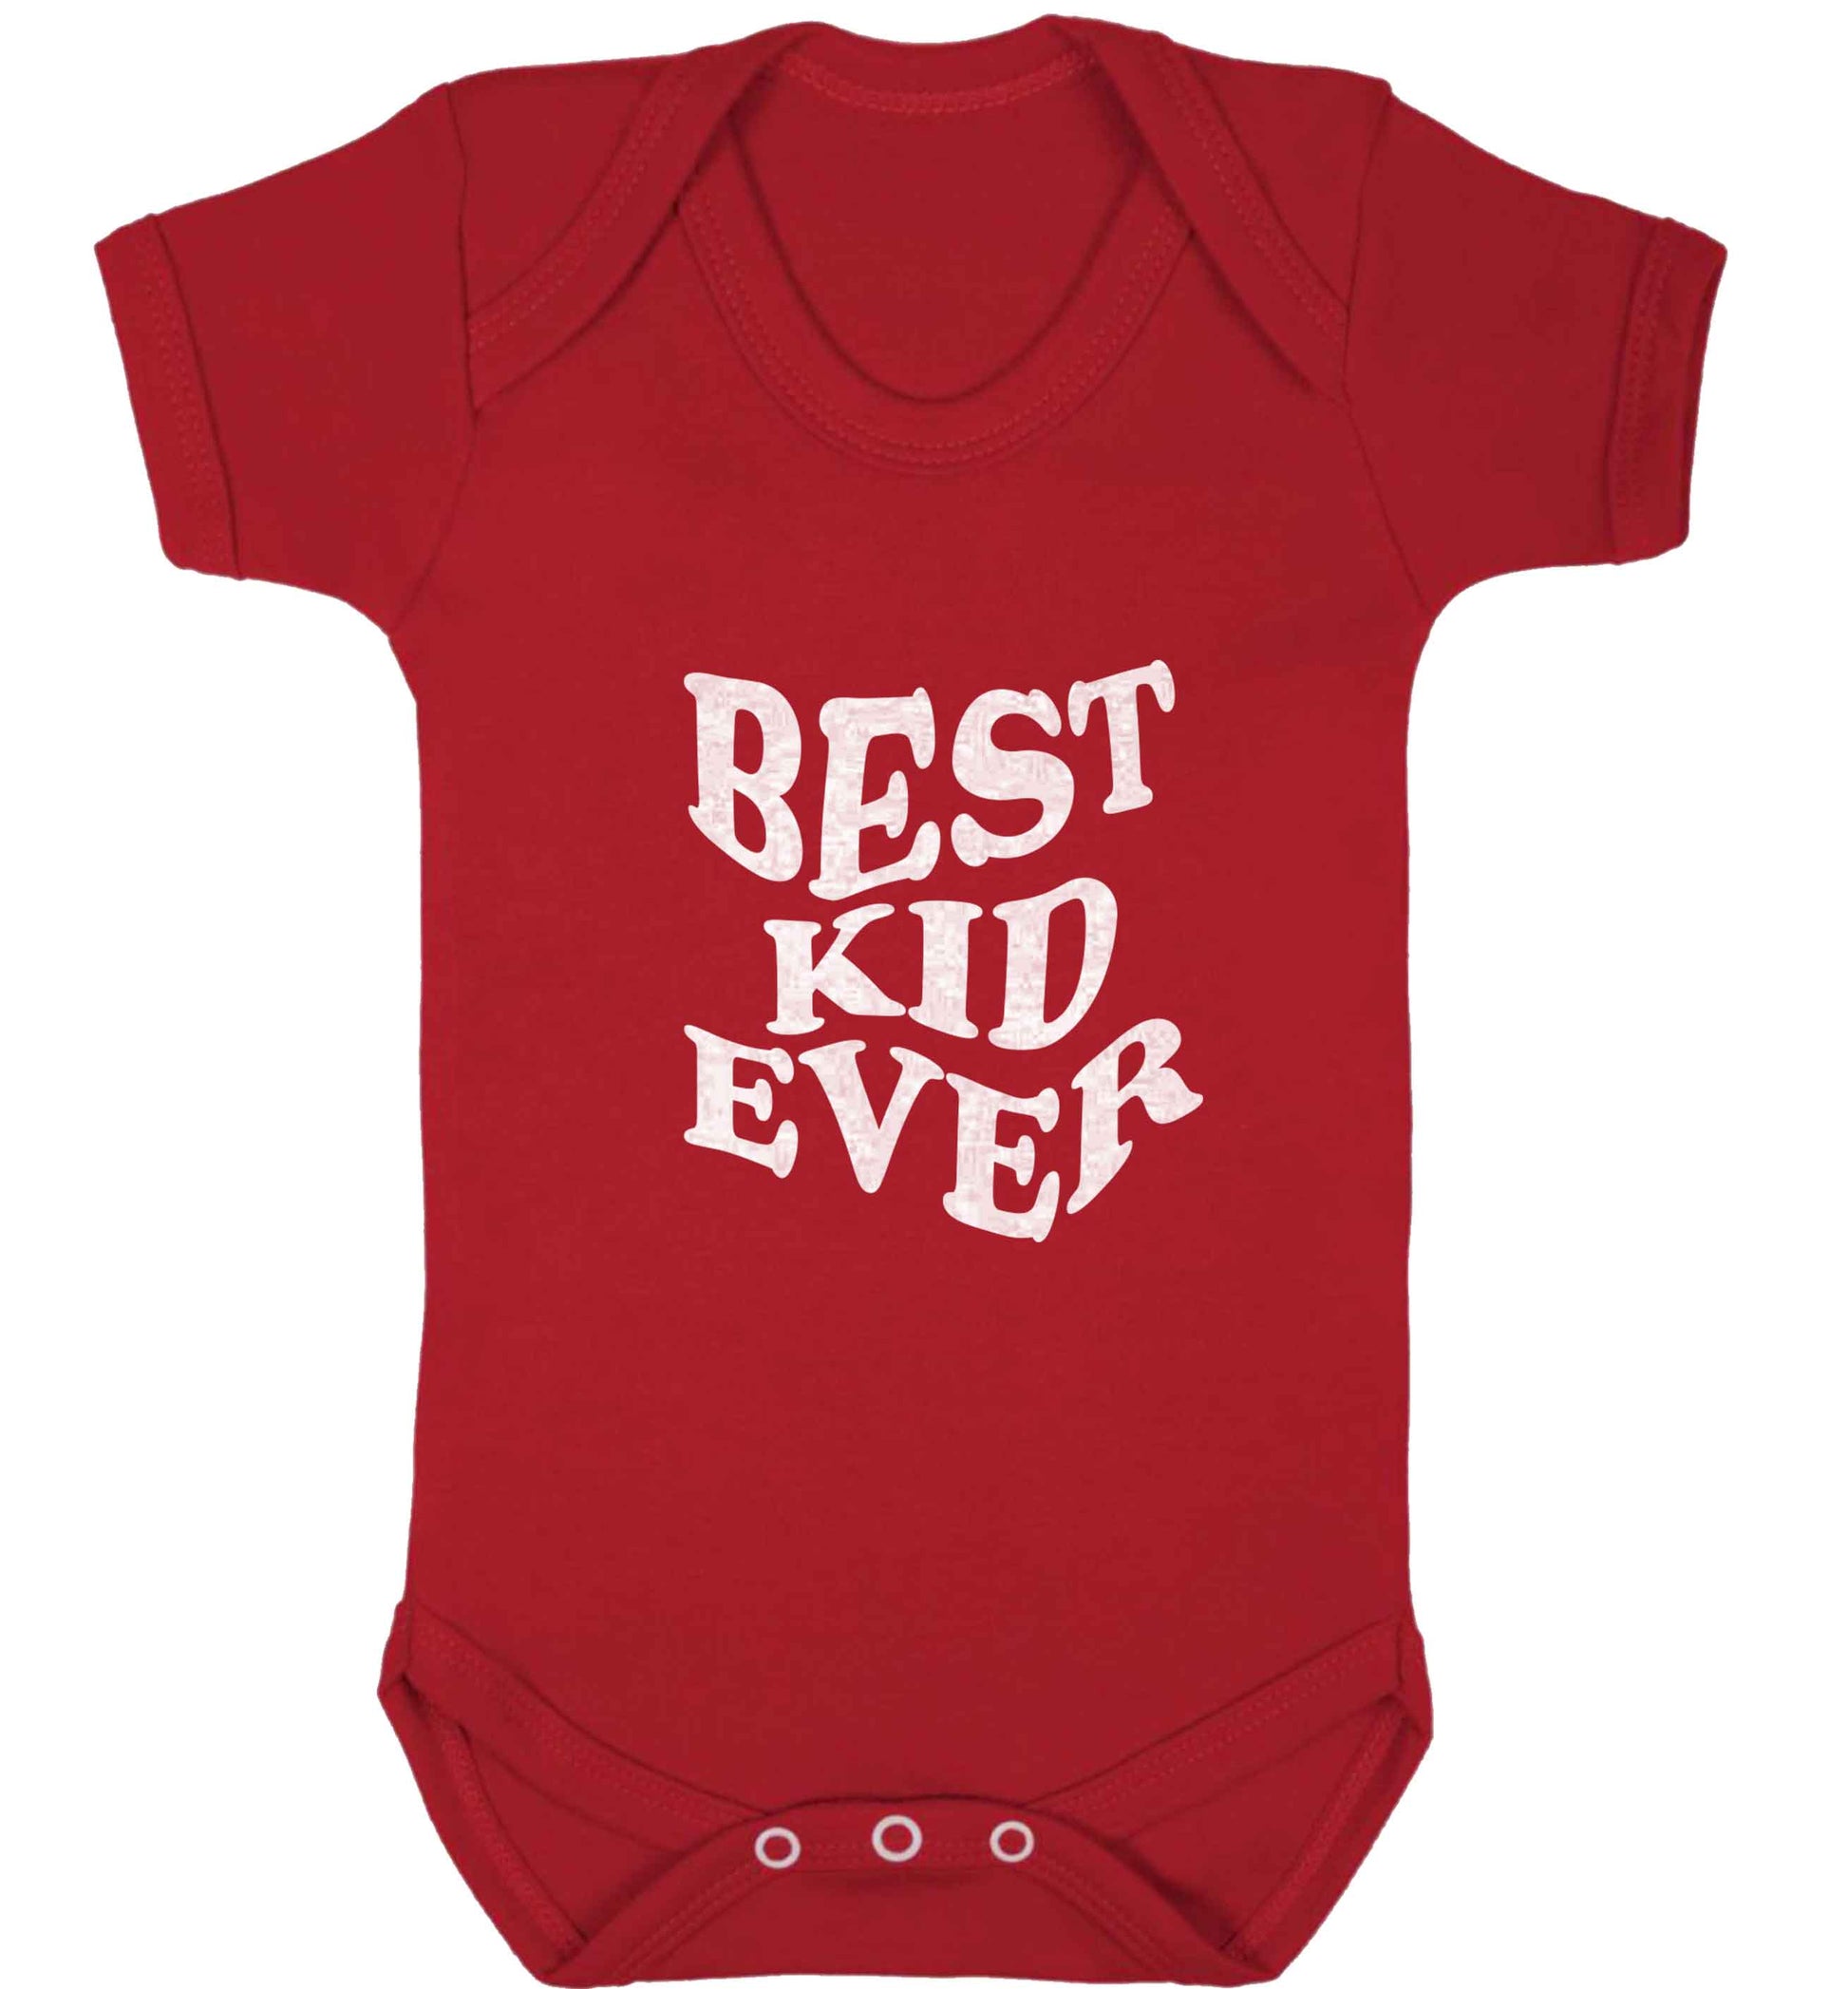 Best kid ever baby vest red 18-24 months